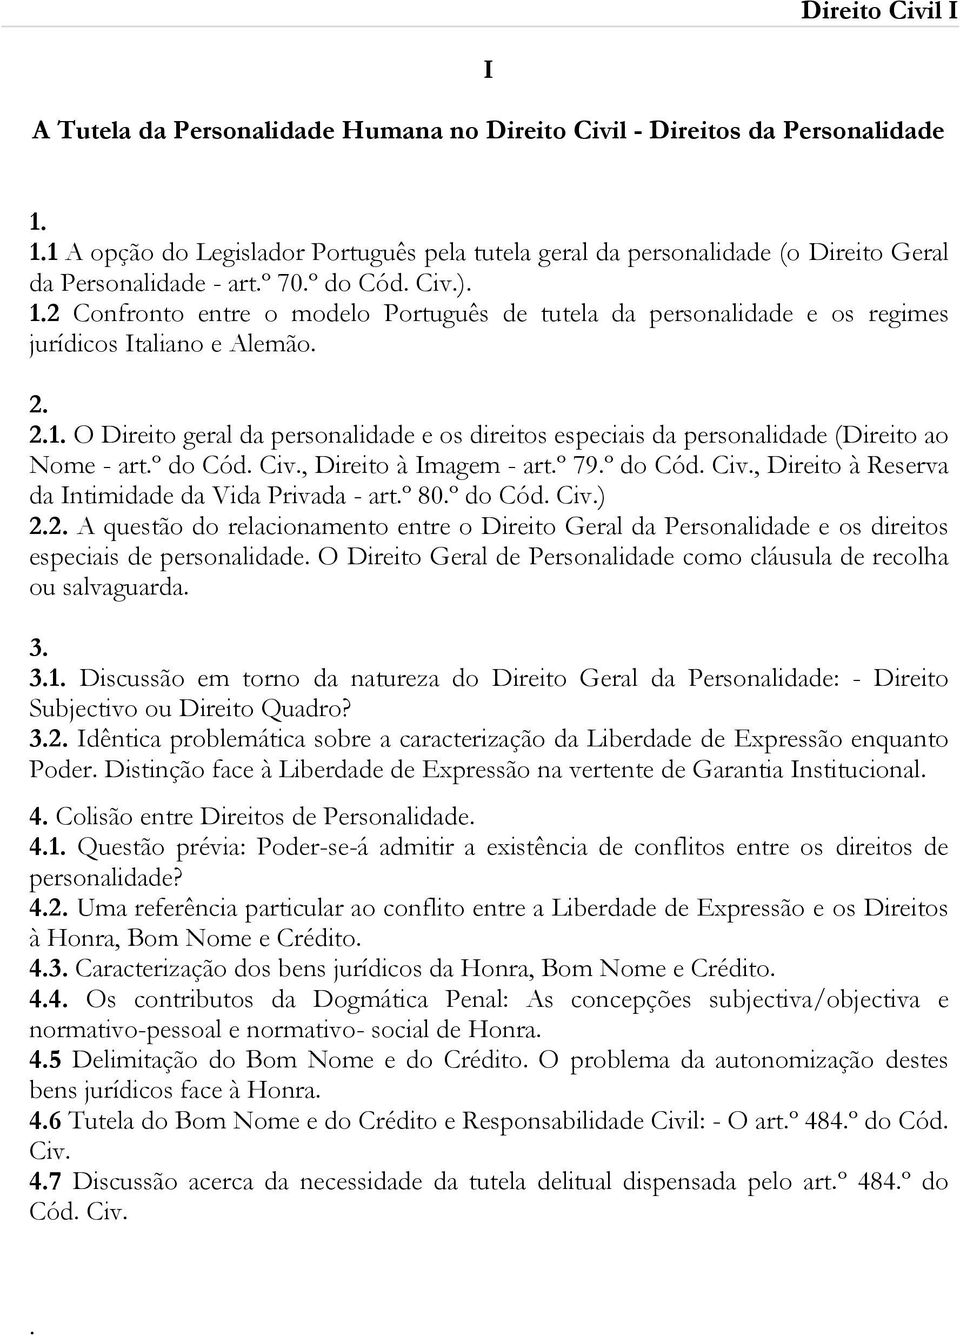 2 Confronto entre o modelo Português de tutela da personalidade e os regimes jurídicos Italiano e Alemão. 2. 2.1.